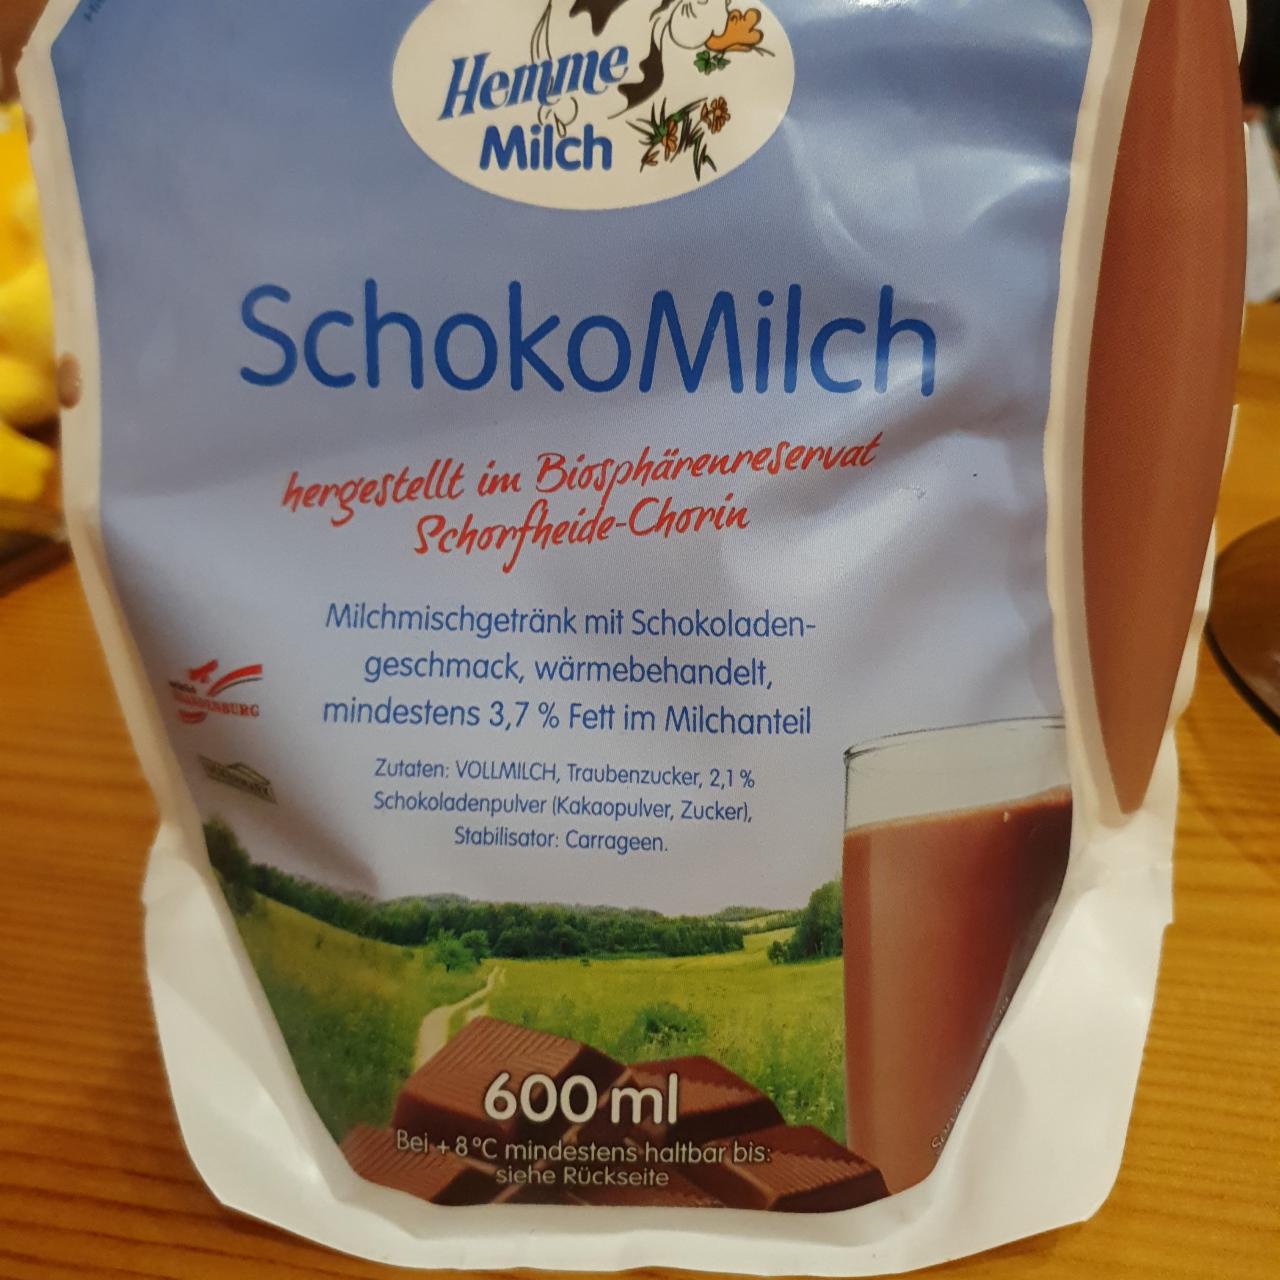 Zdjęcia - SchokoMilch Hemme Milch